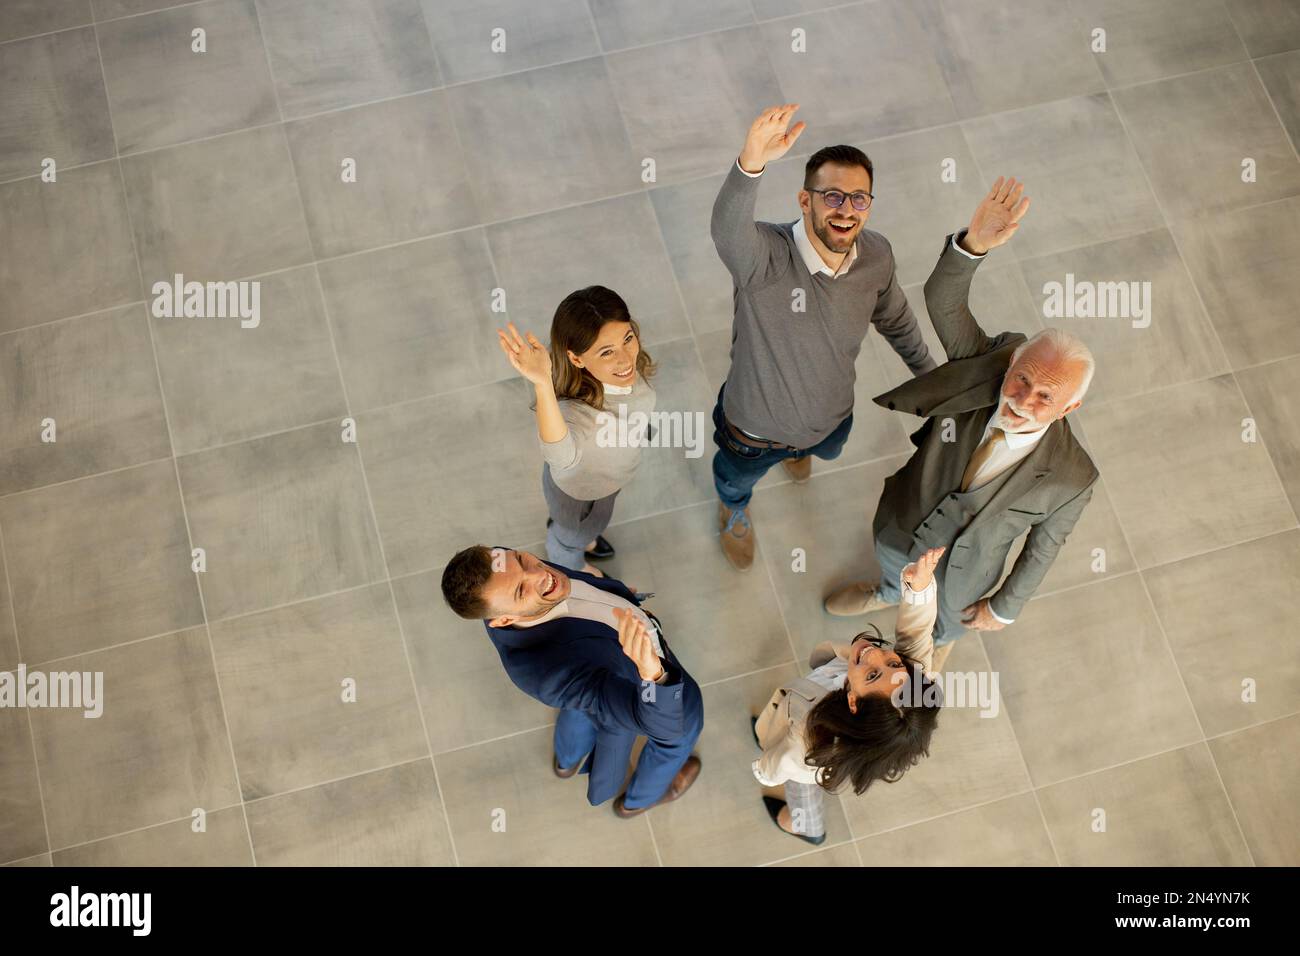 La vue aérienne des gens d'affaires heureux lève les mains avec joie et succès dans le couloir du bureau. Concept de réussite et de travail d'équipe Banque D'Images